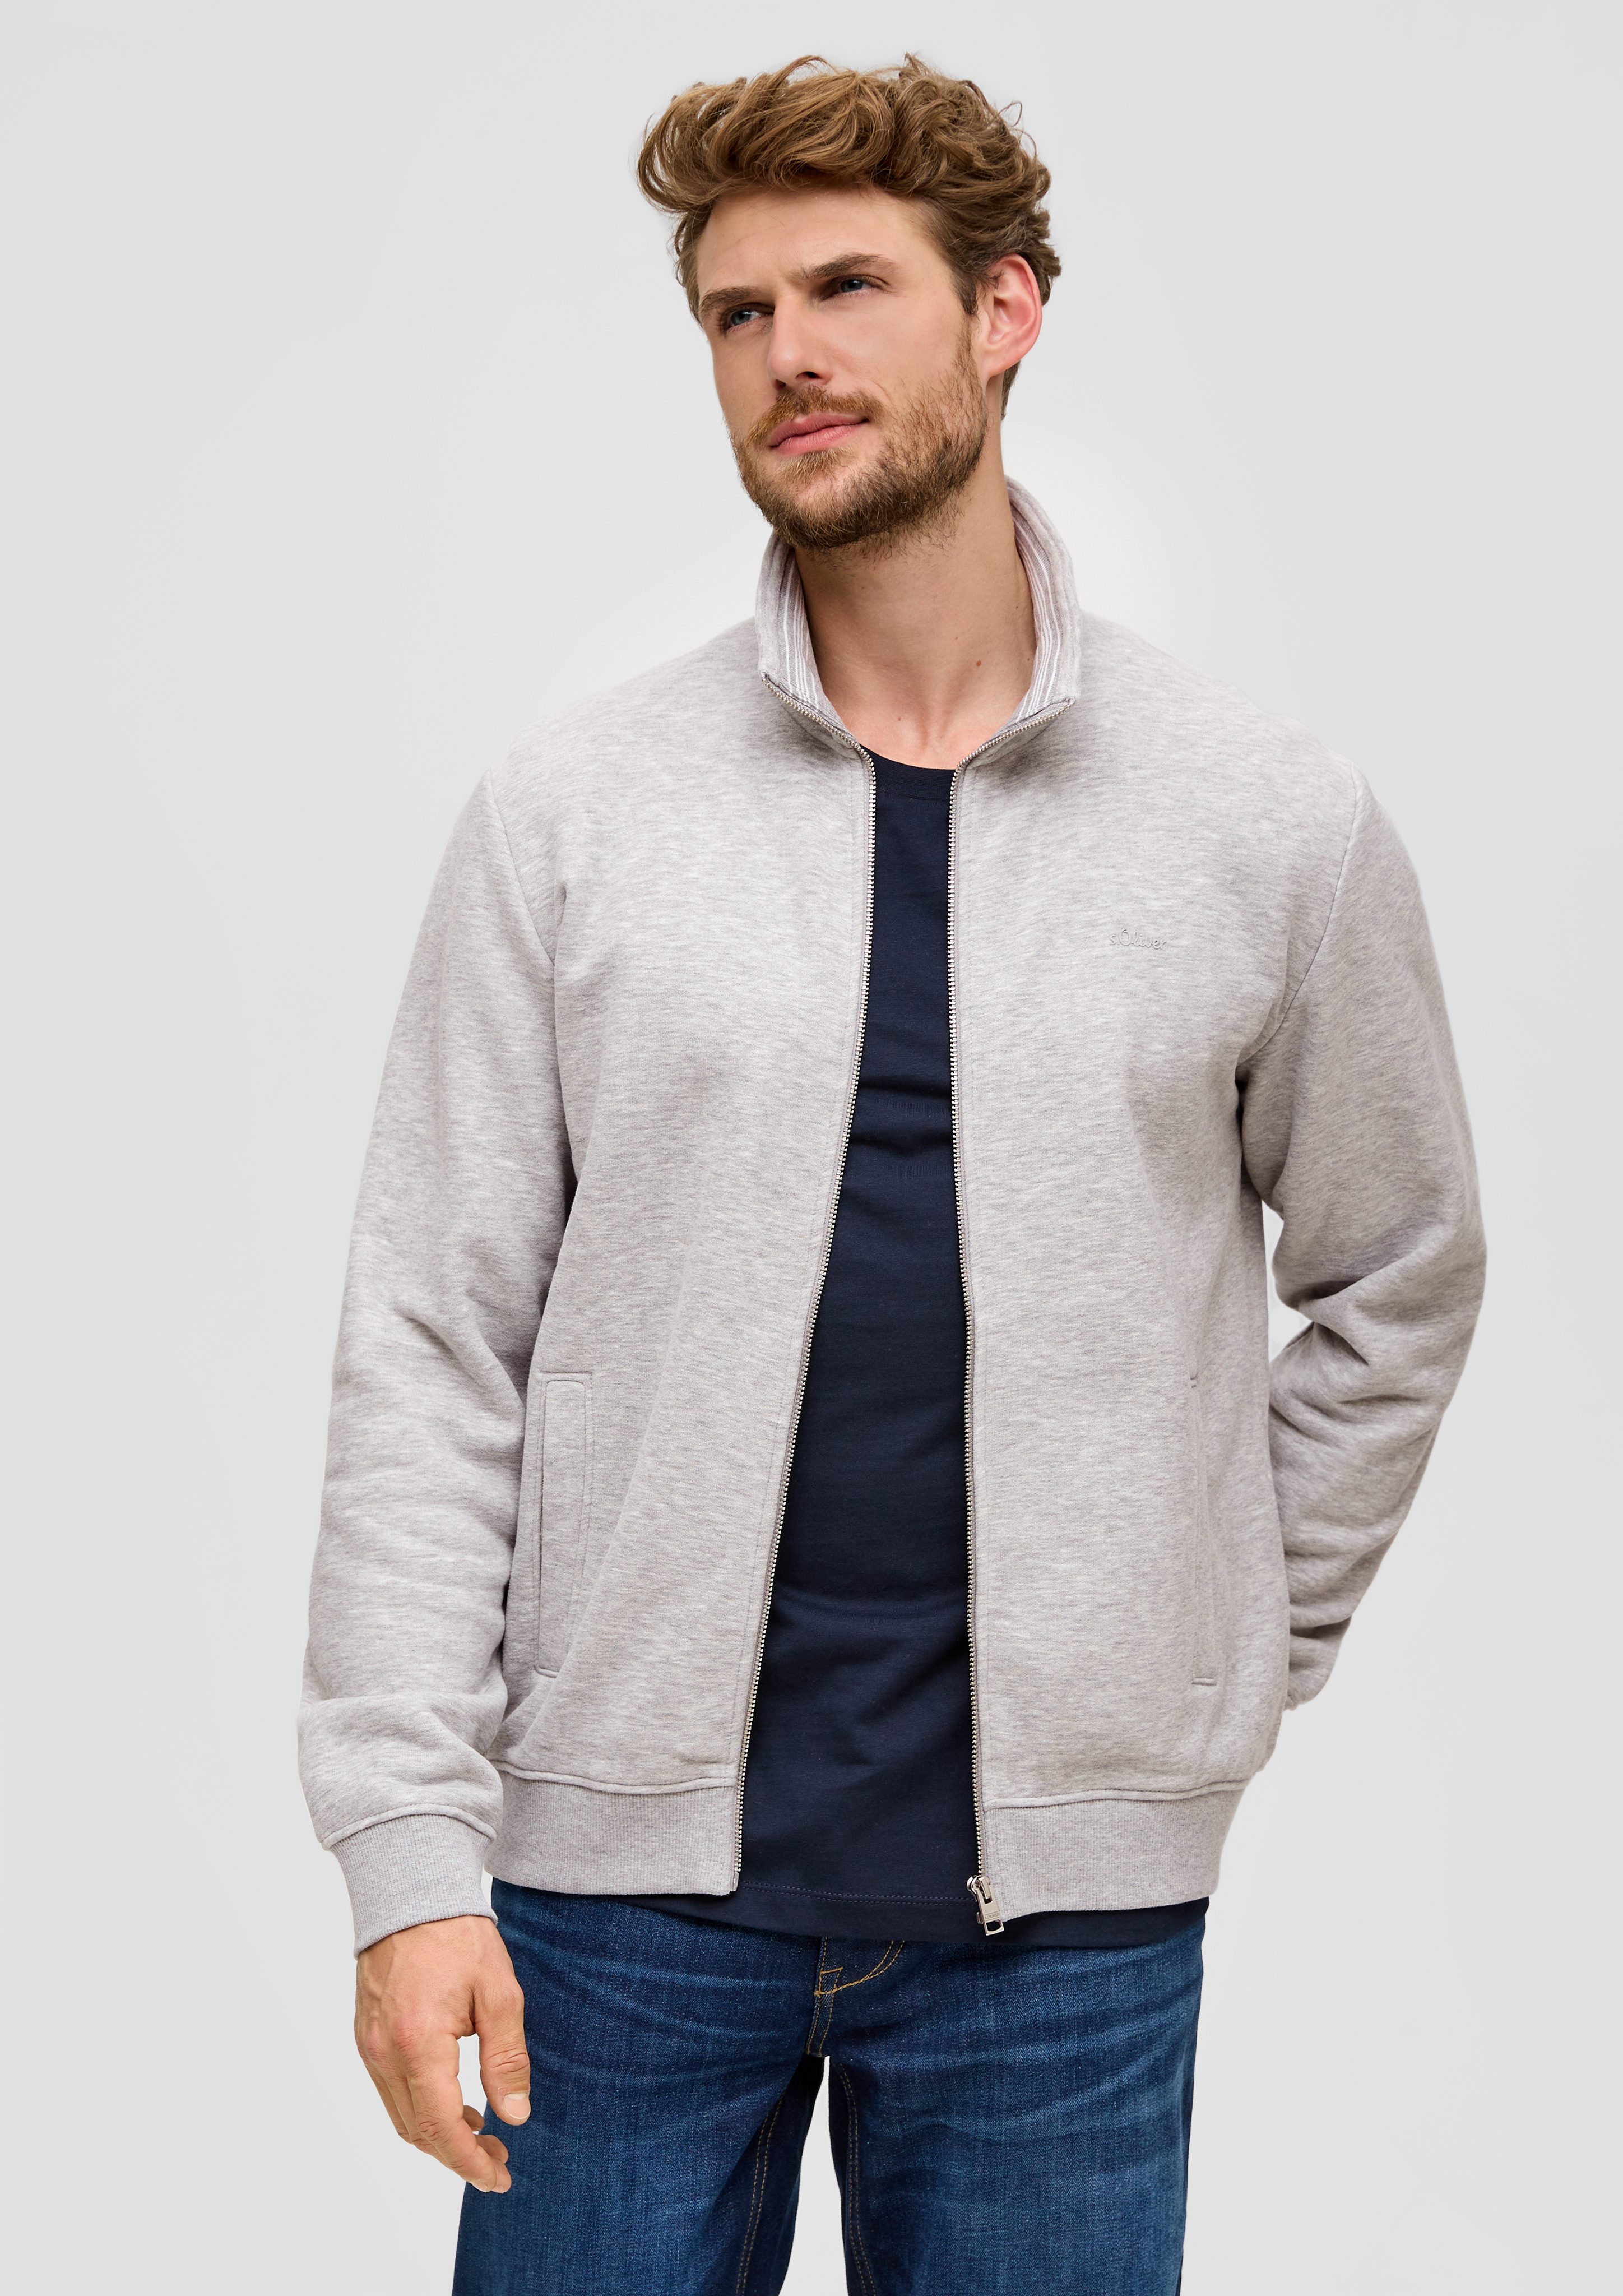 s.Oliver Allwetterjacke Sweatshirt-Jacke mit Stehkragen Logo, Streifen-Detail grau meliert